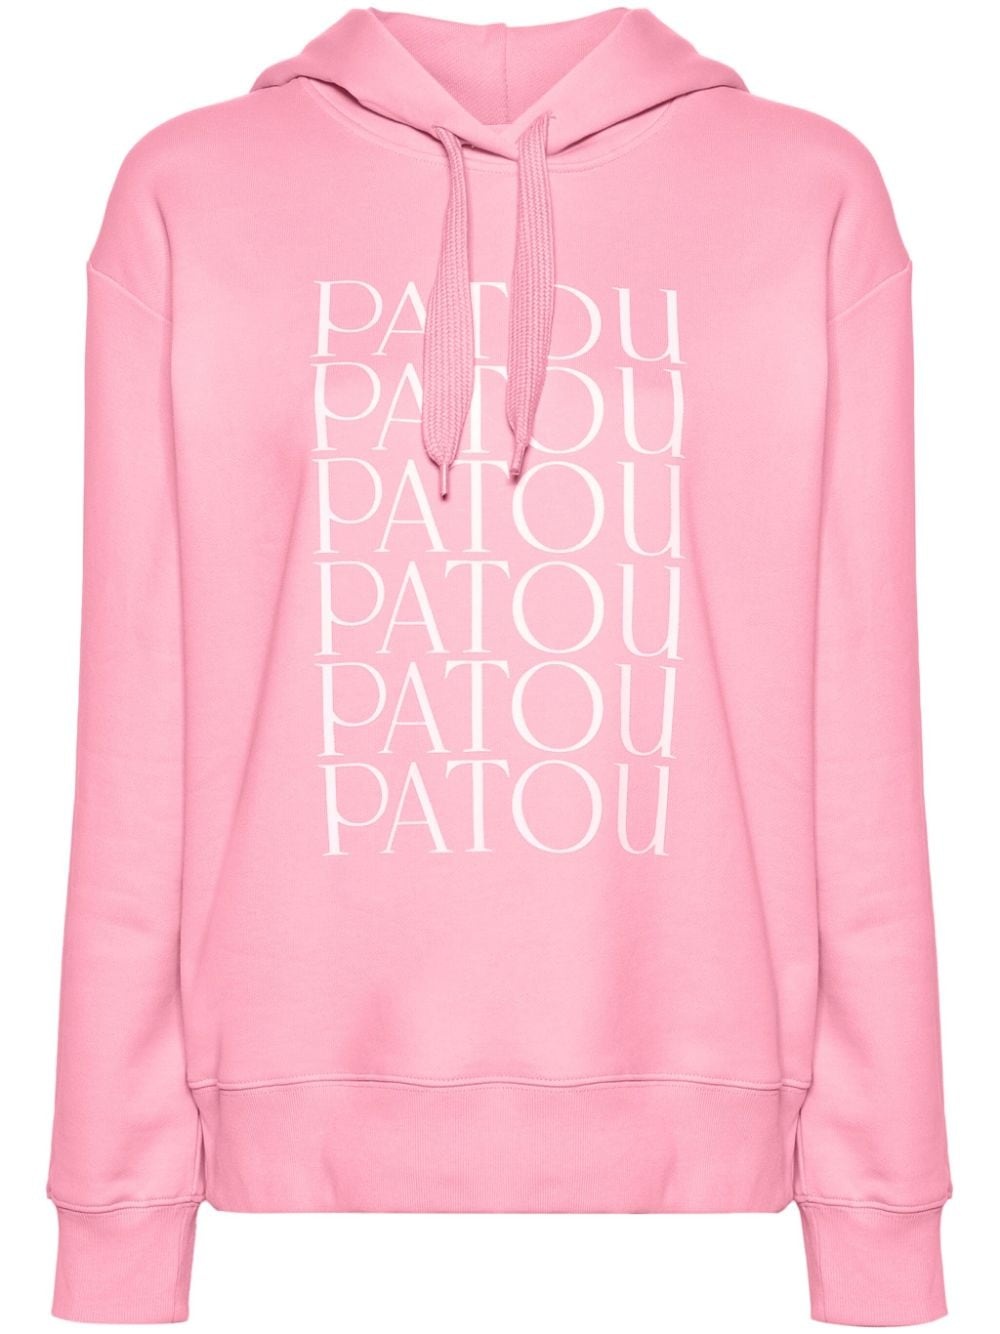 Patou Patou cotton hoodie - 1